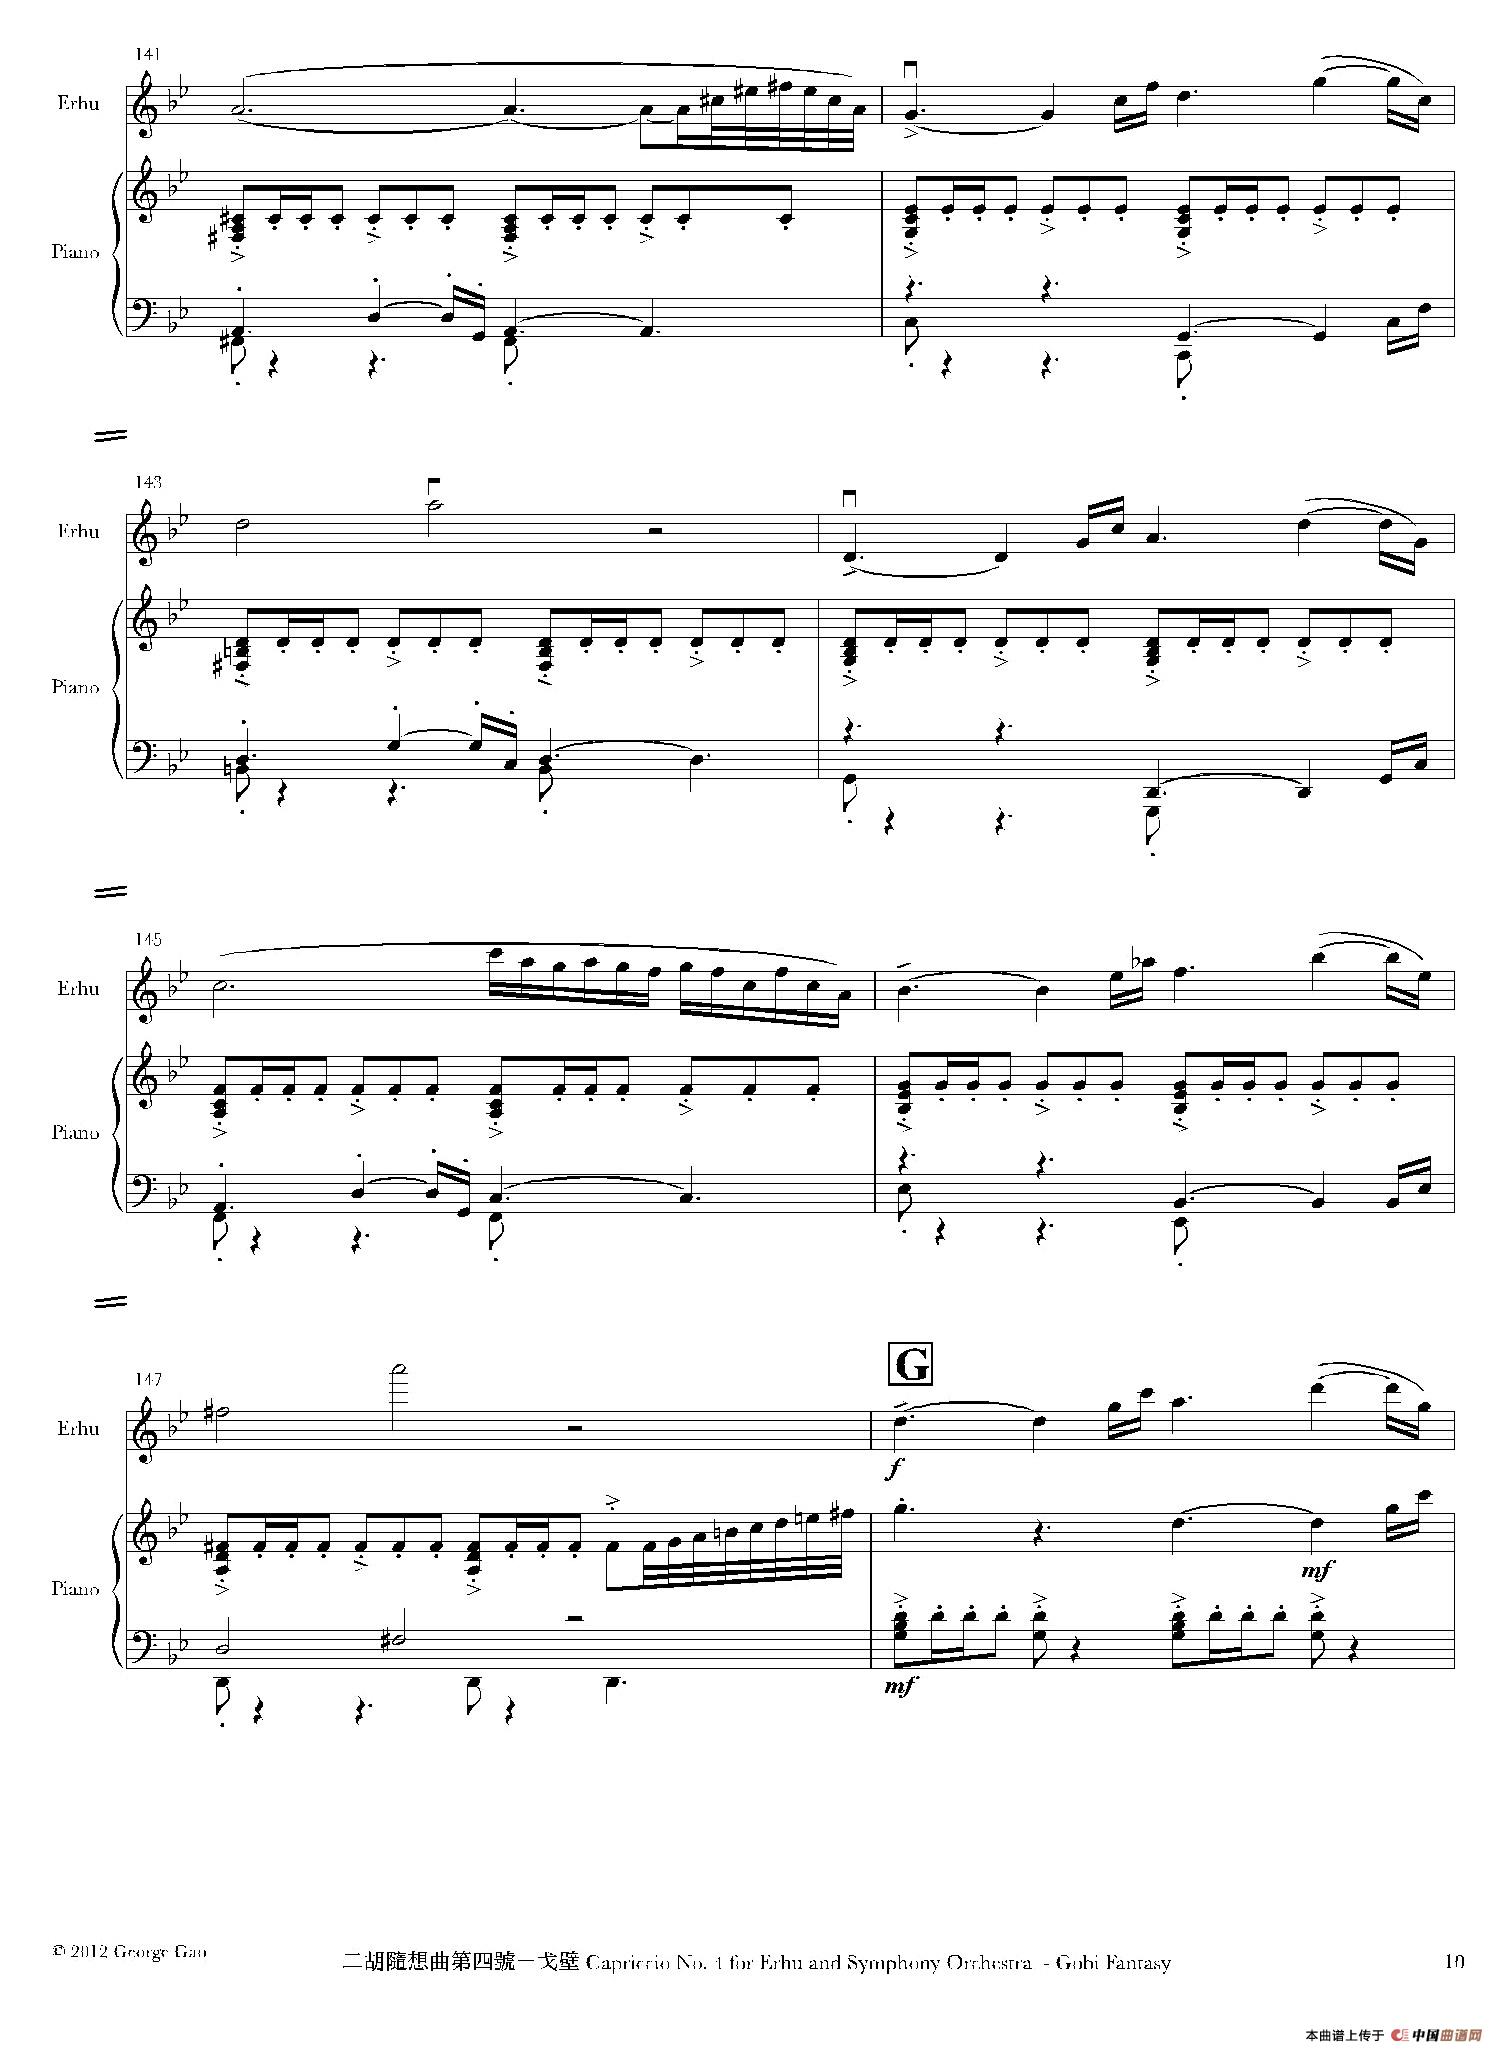 二胡随想曲第四号——戈壁（二胡+钢琴伴奏）(1)_原文件名：017.jpg